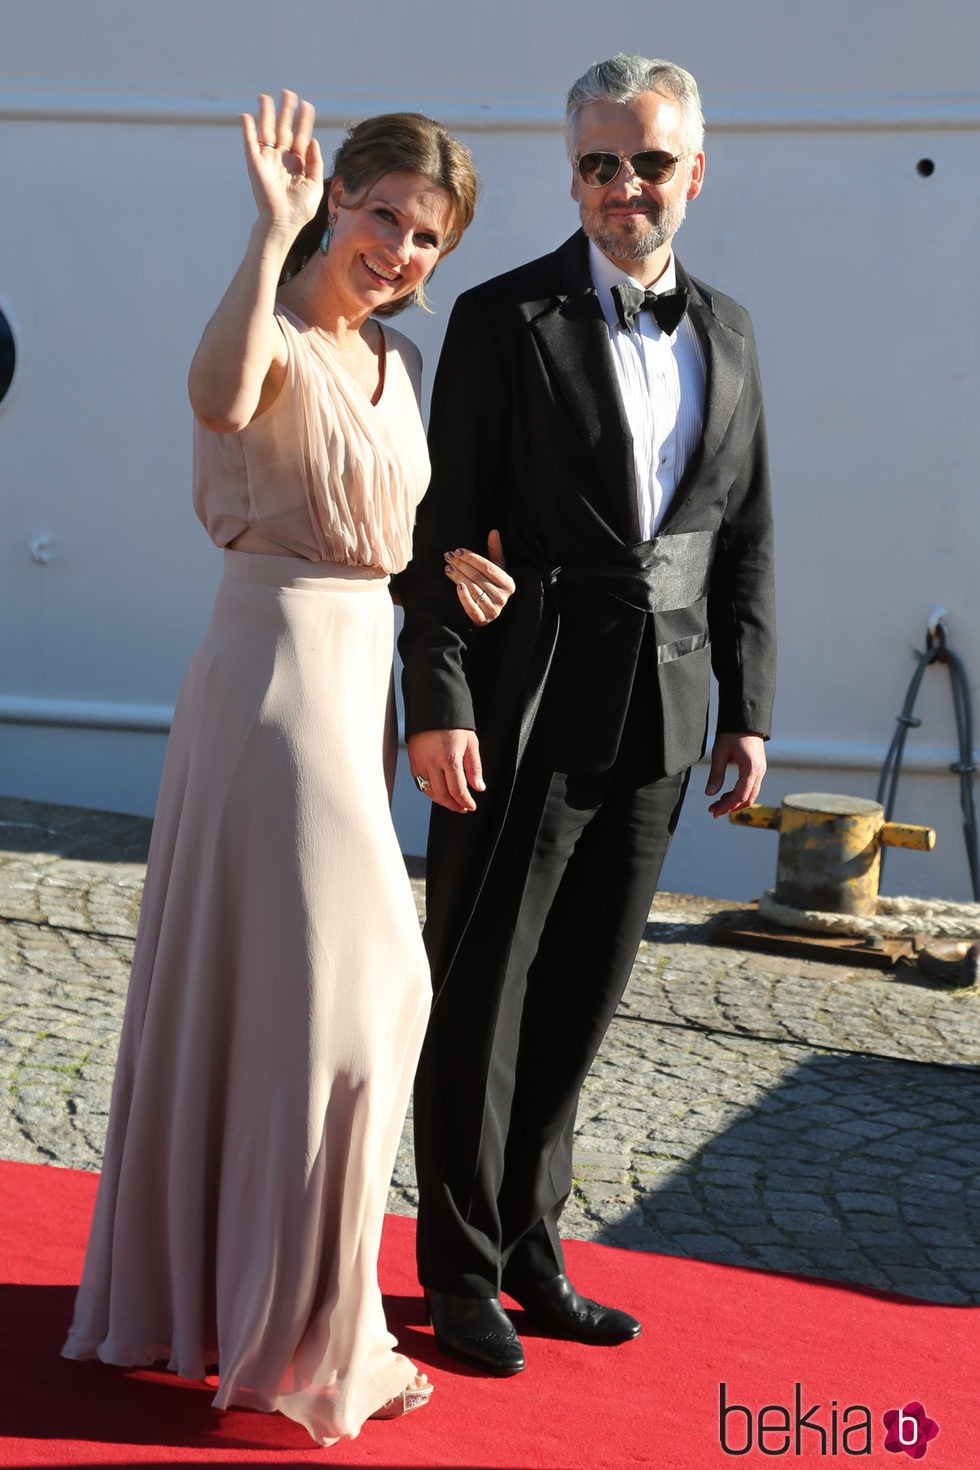 Marta Luisa de Noruega y Ari Behn en la cena de gala previa a la boda de Carlos Felipe de Suecia y Sofia Hellqvist